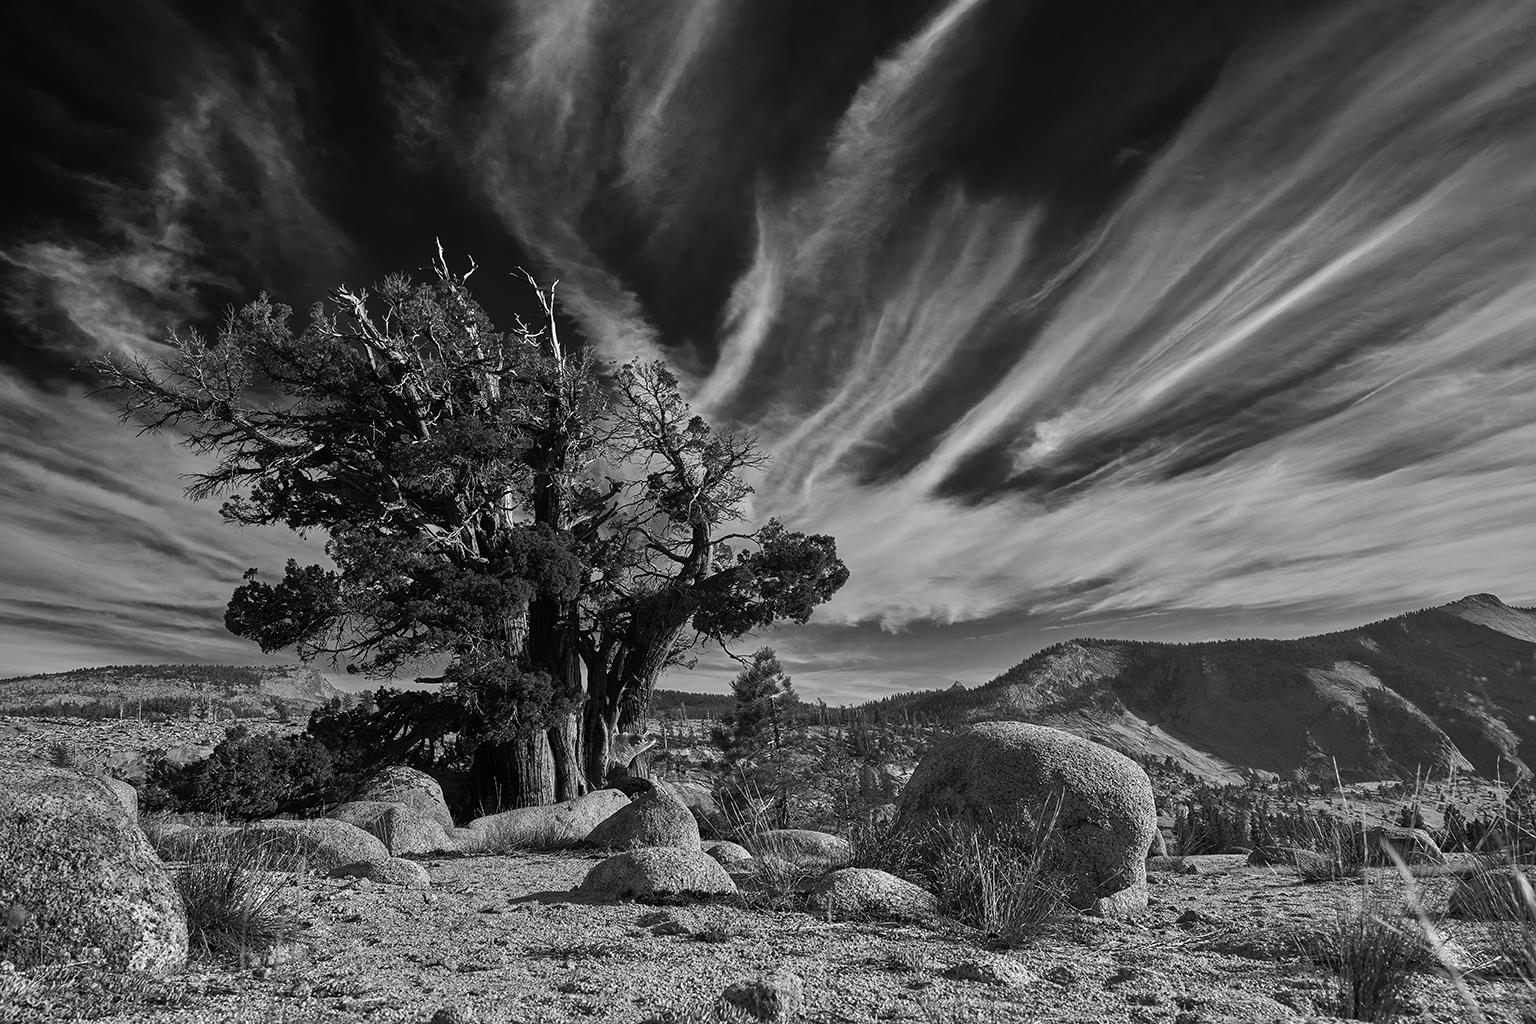 Tree Study III – großformatige Fotografie einer dramatischen Berglandschaft